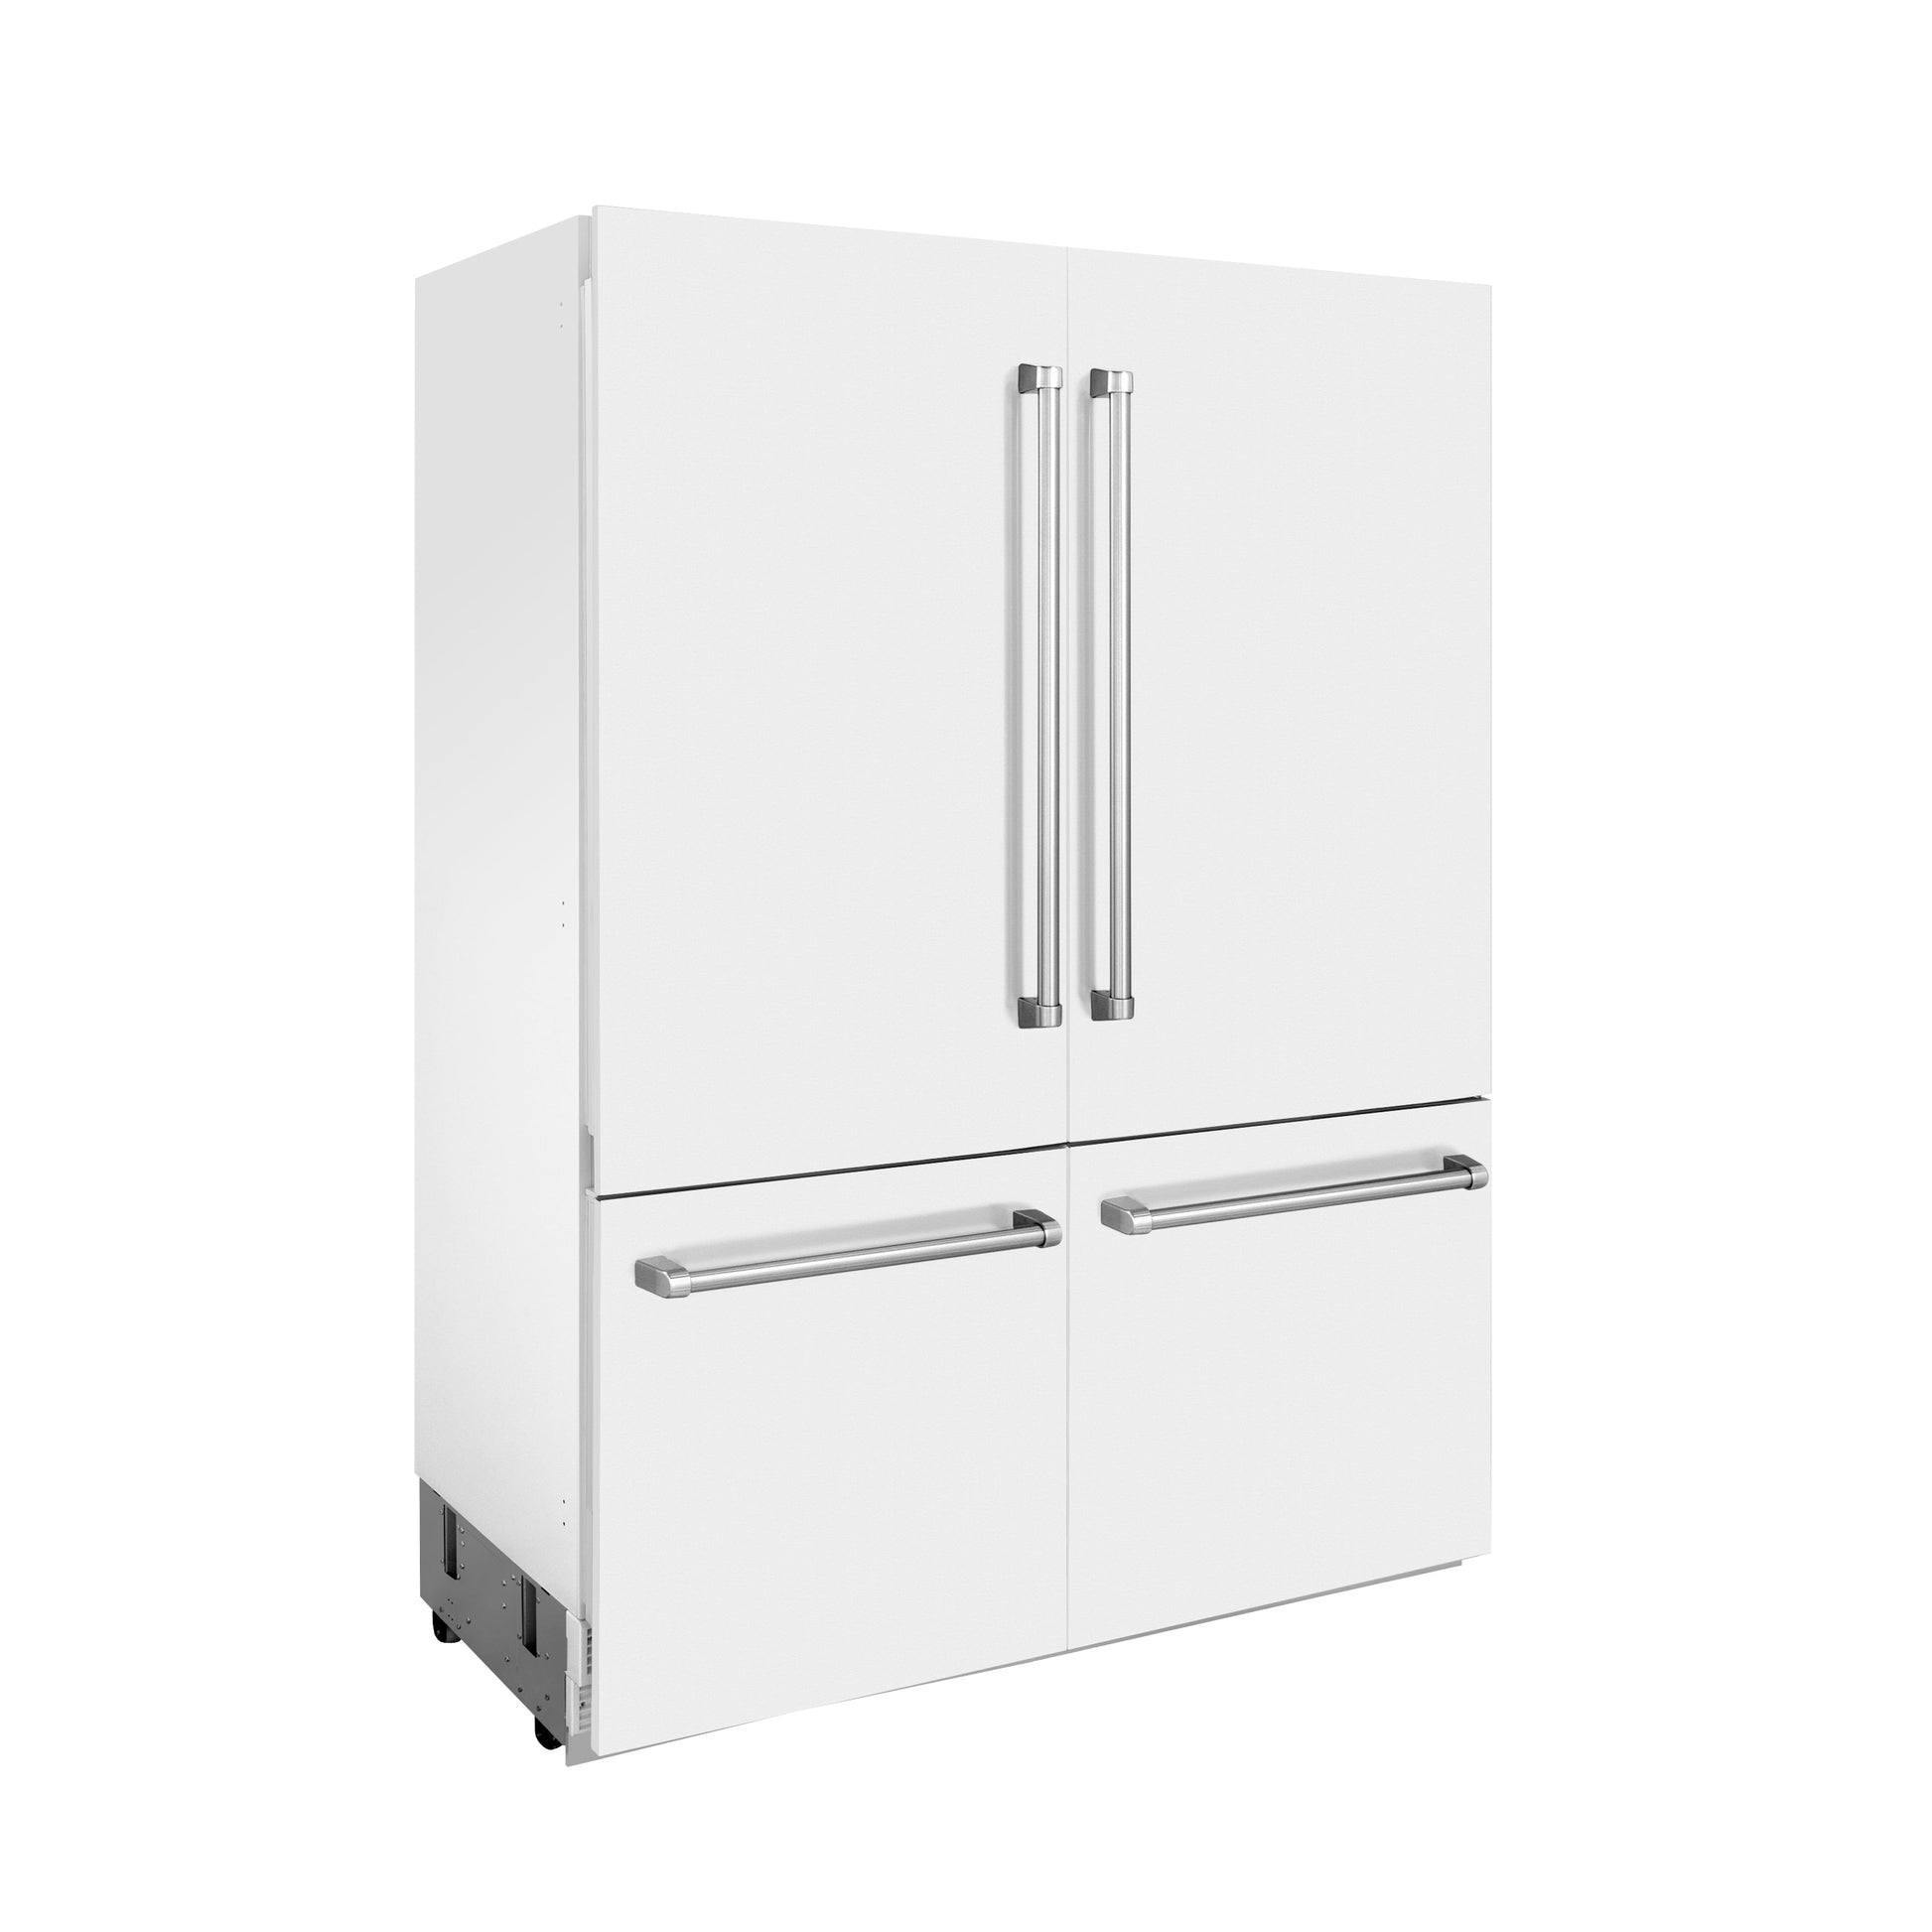 ZLINE 60" Built-In 4-Door French Door Refrigerator with Internal Water and Ice Dispenser - Matte White